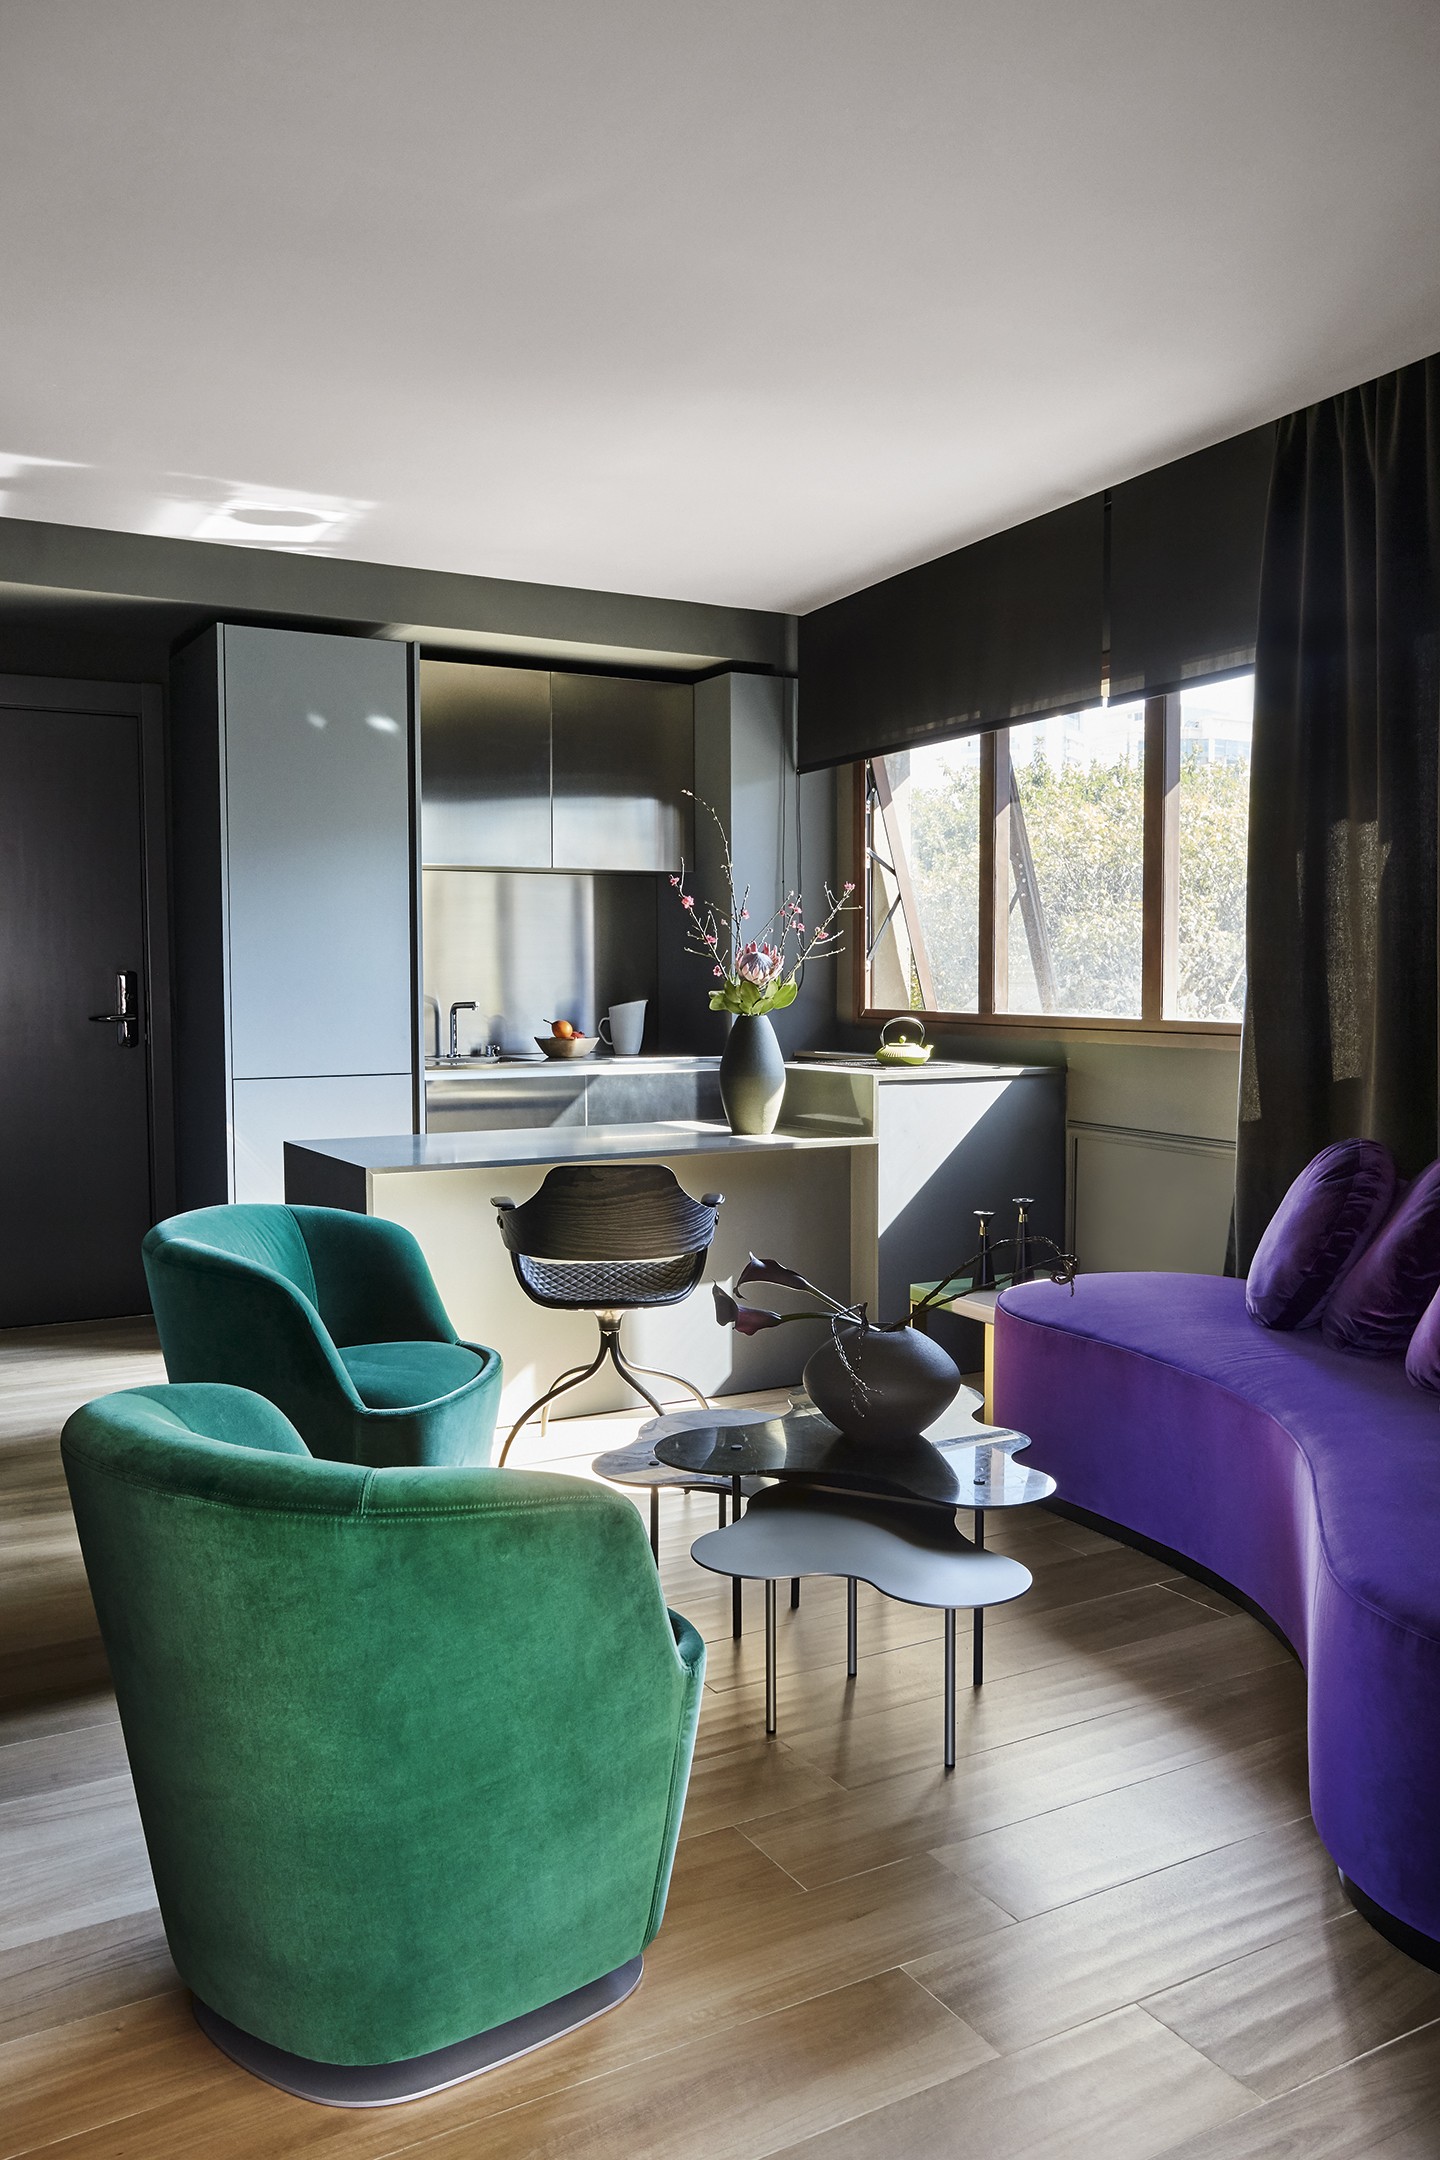 Apartamento de 46 m² tem paleta escura e móveis de design assinado (Foto: Ilana Bessler)